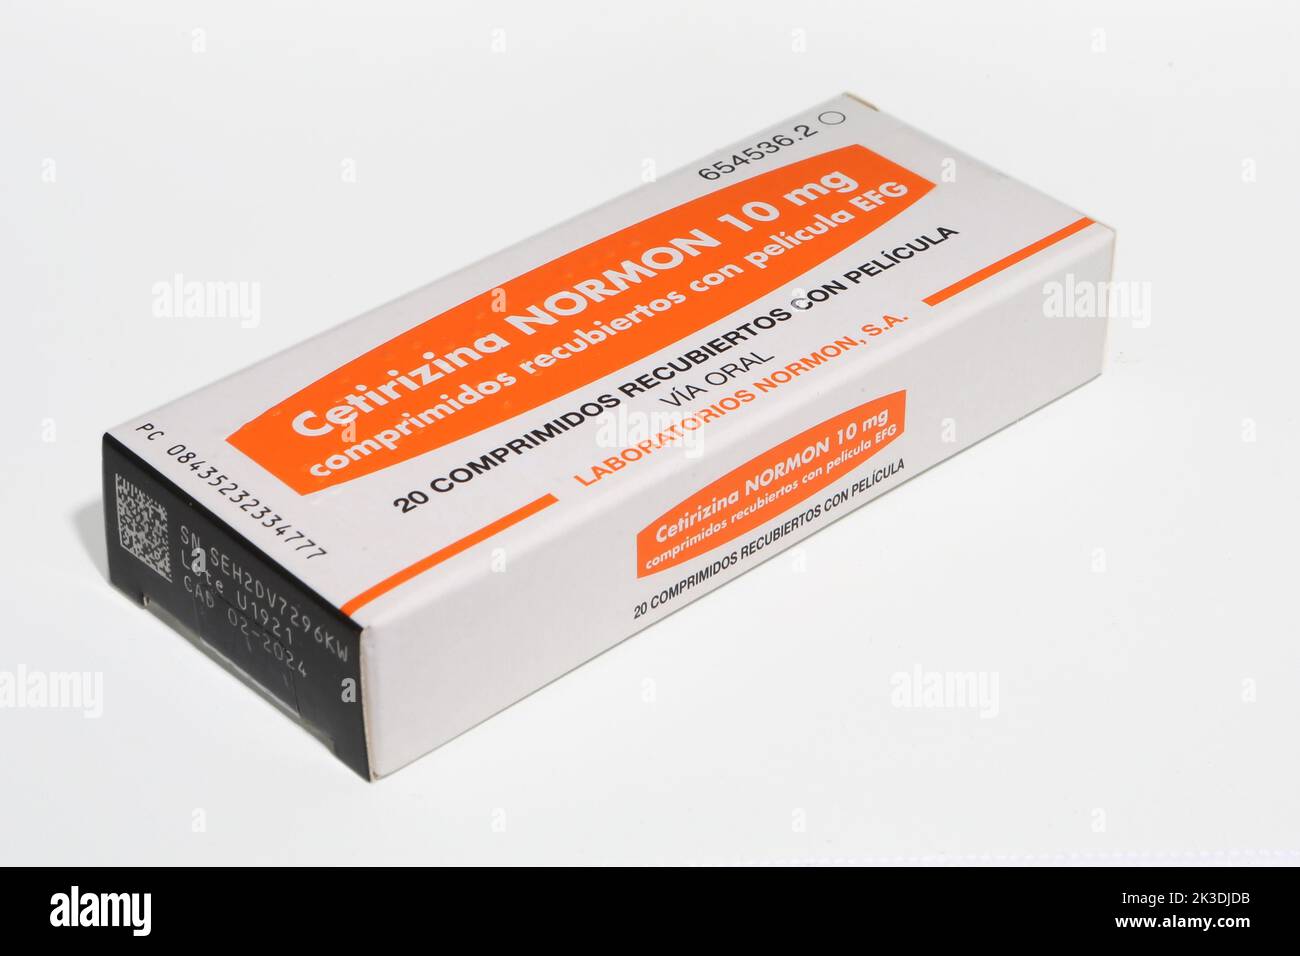 Cetirizina normon 10 mg comprimidos recubiertos con pelicula efg immagini e  fotografie stock ad alta risoluzione - Alamy